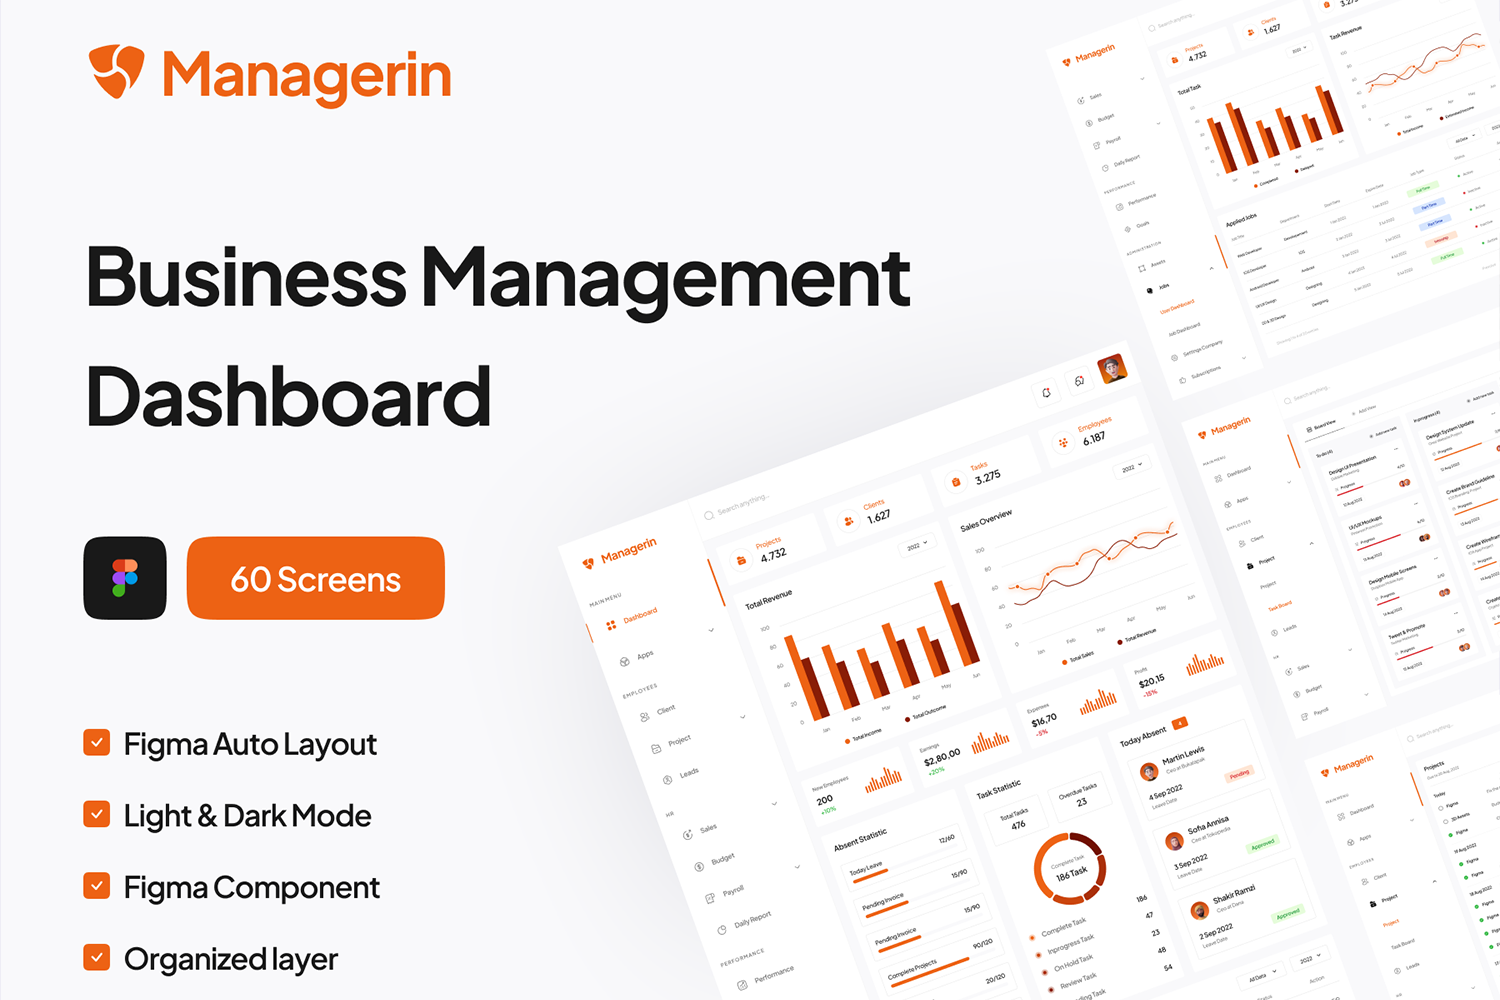 4583 商城数据后台业务管理仪表盘Fig模版 Managerin – Business Management Dashboard UI Kit@GOOODME.COM